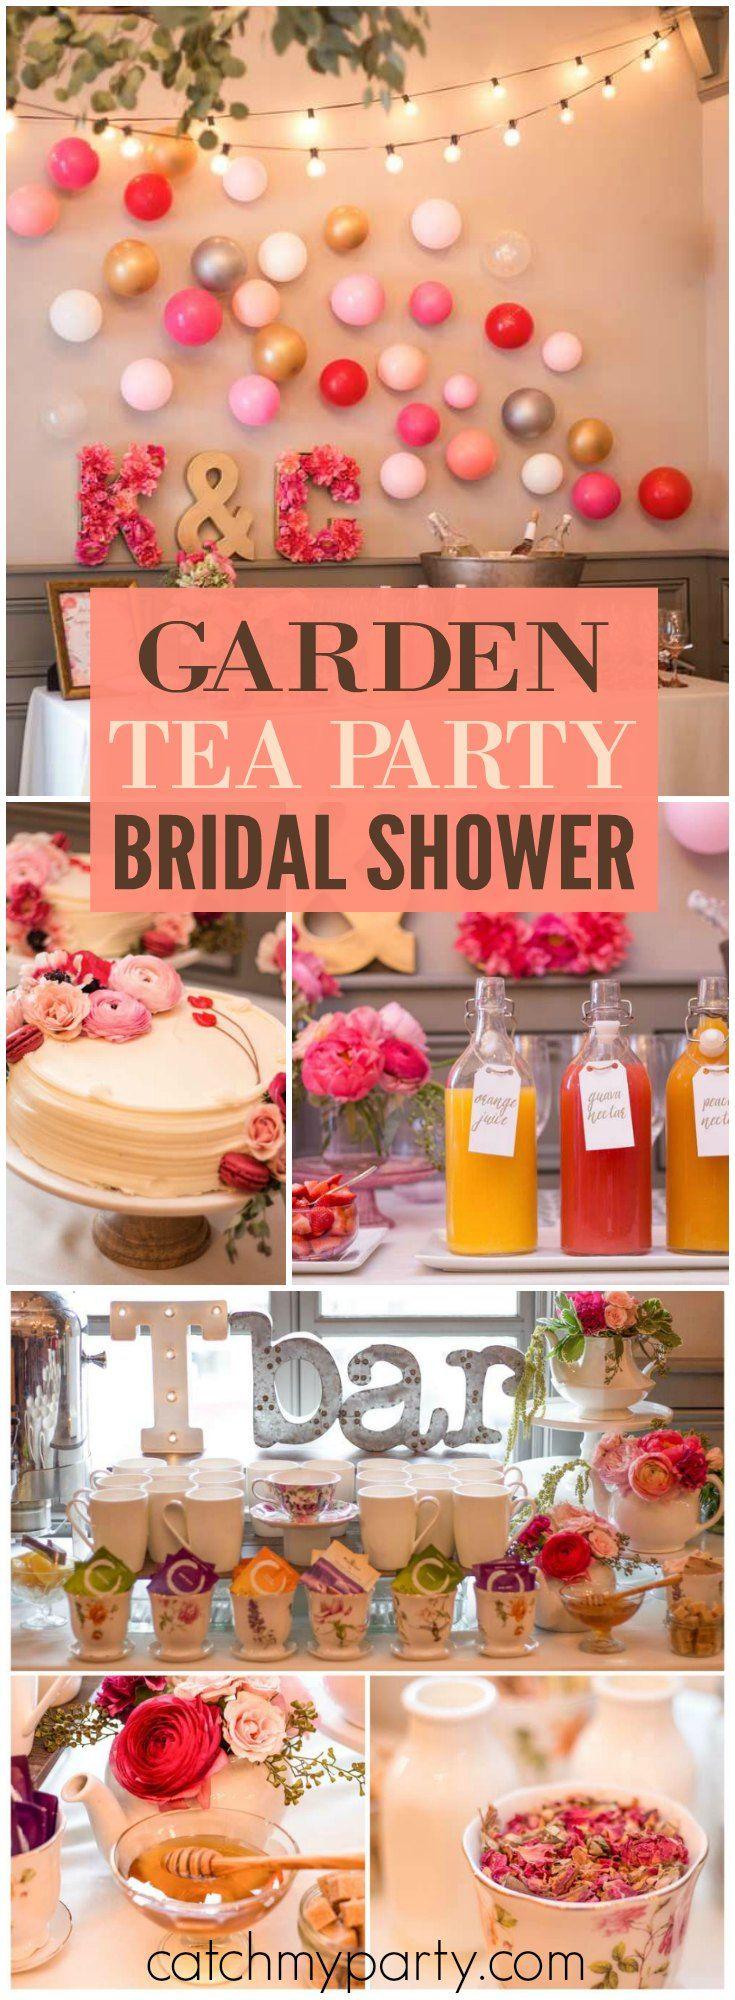 زفاف - Garden Tea Party / Bridal/Wedding Shower "Kimberly' S Garden Tea Party"